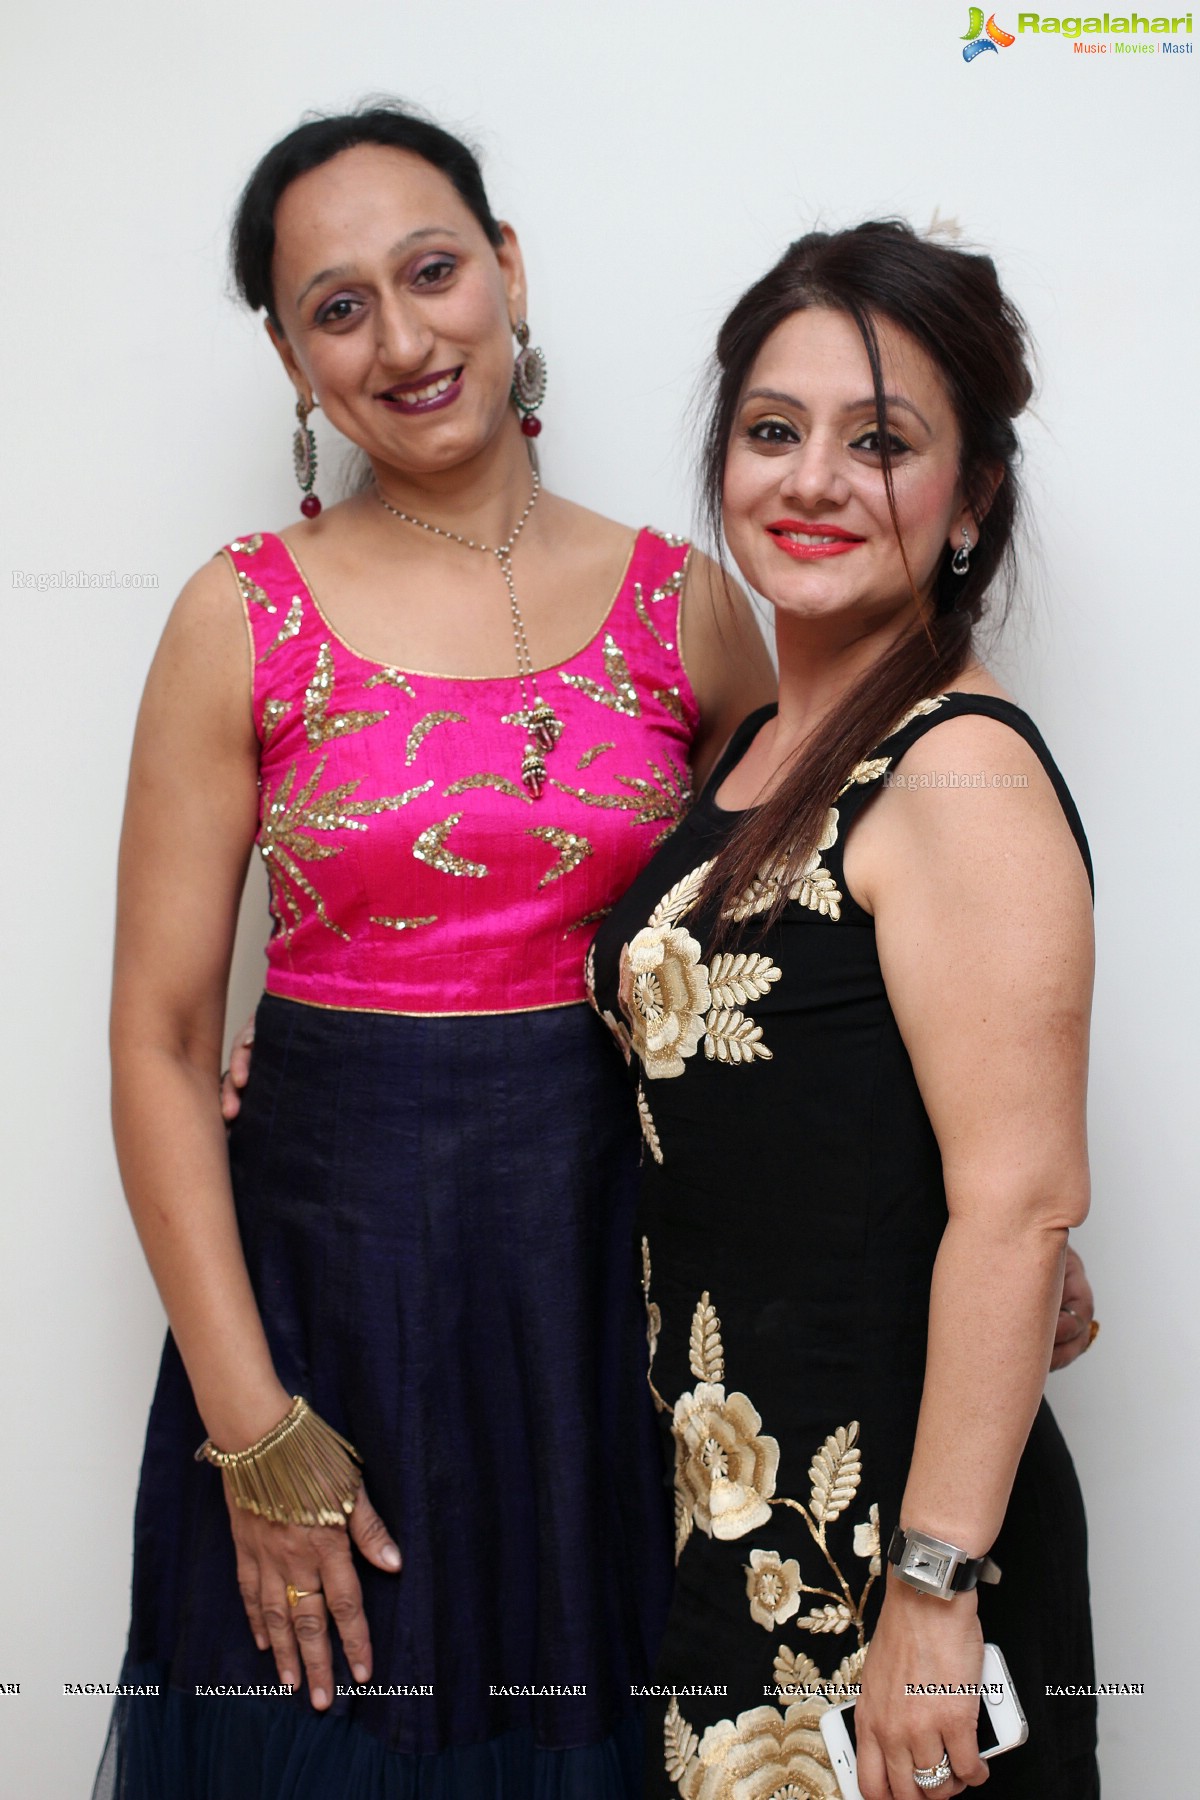 Auditions of Miss & Mrs Gujarati & Rajasthani 2015